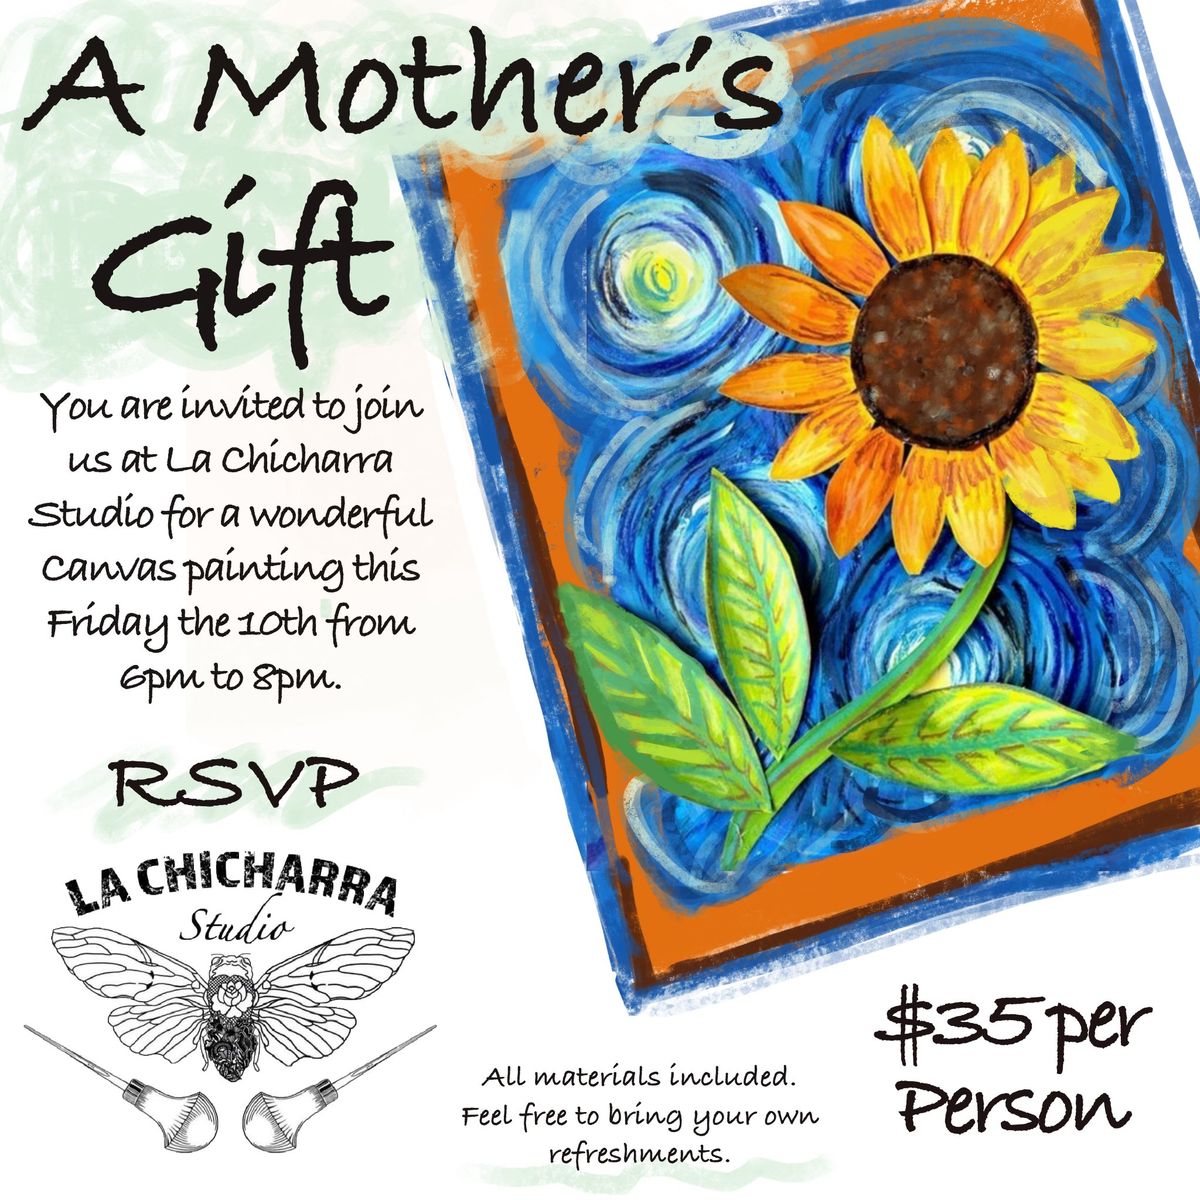 La Chicharra Studio: A Mother's Gift